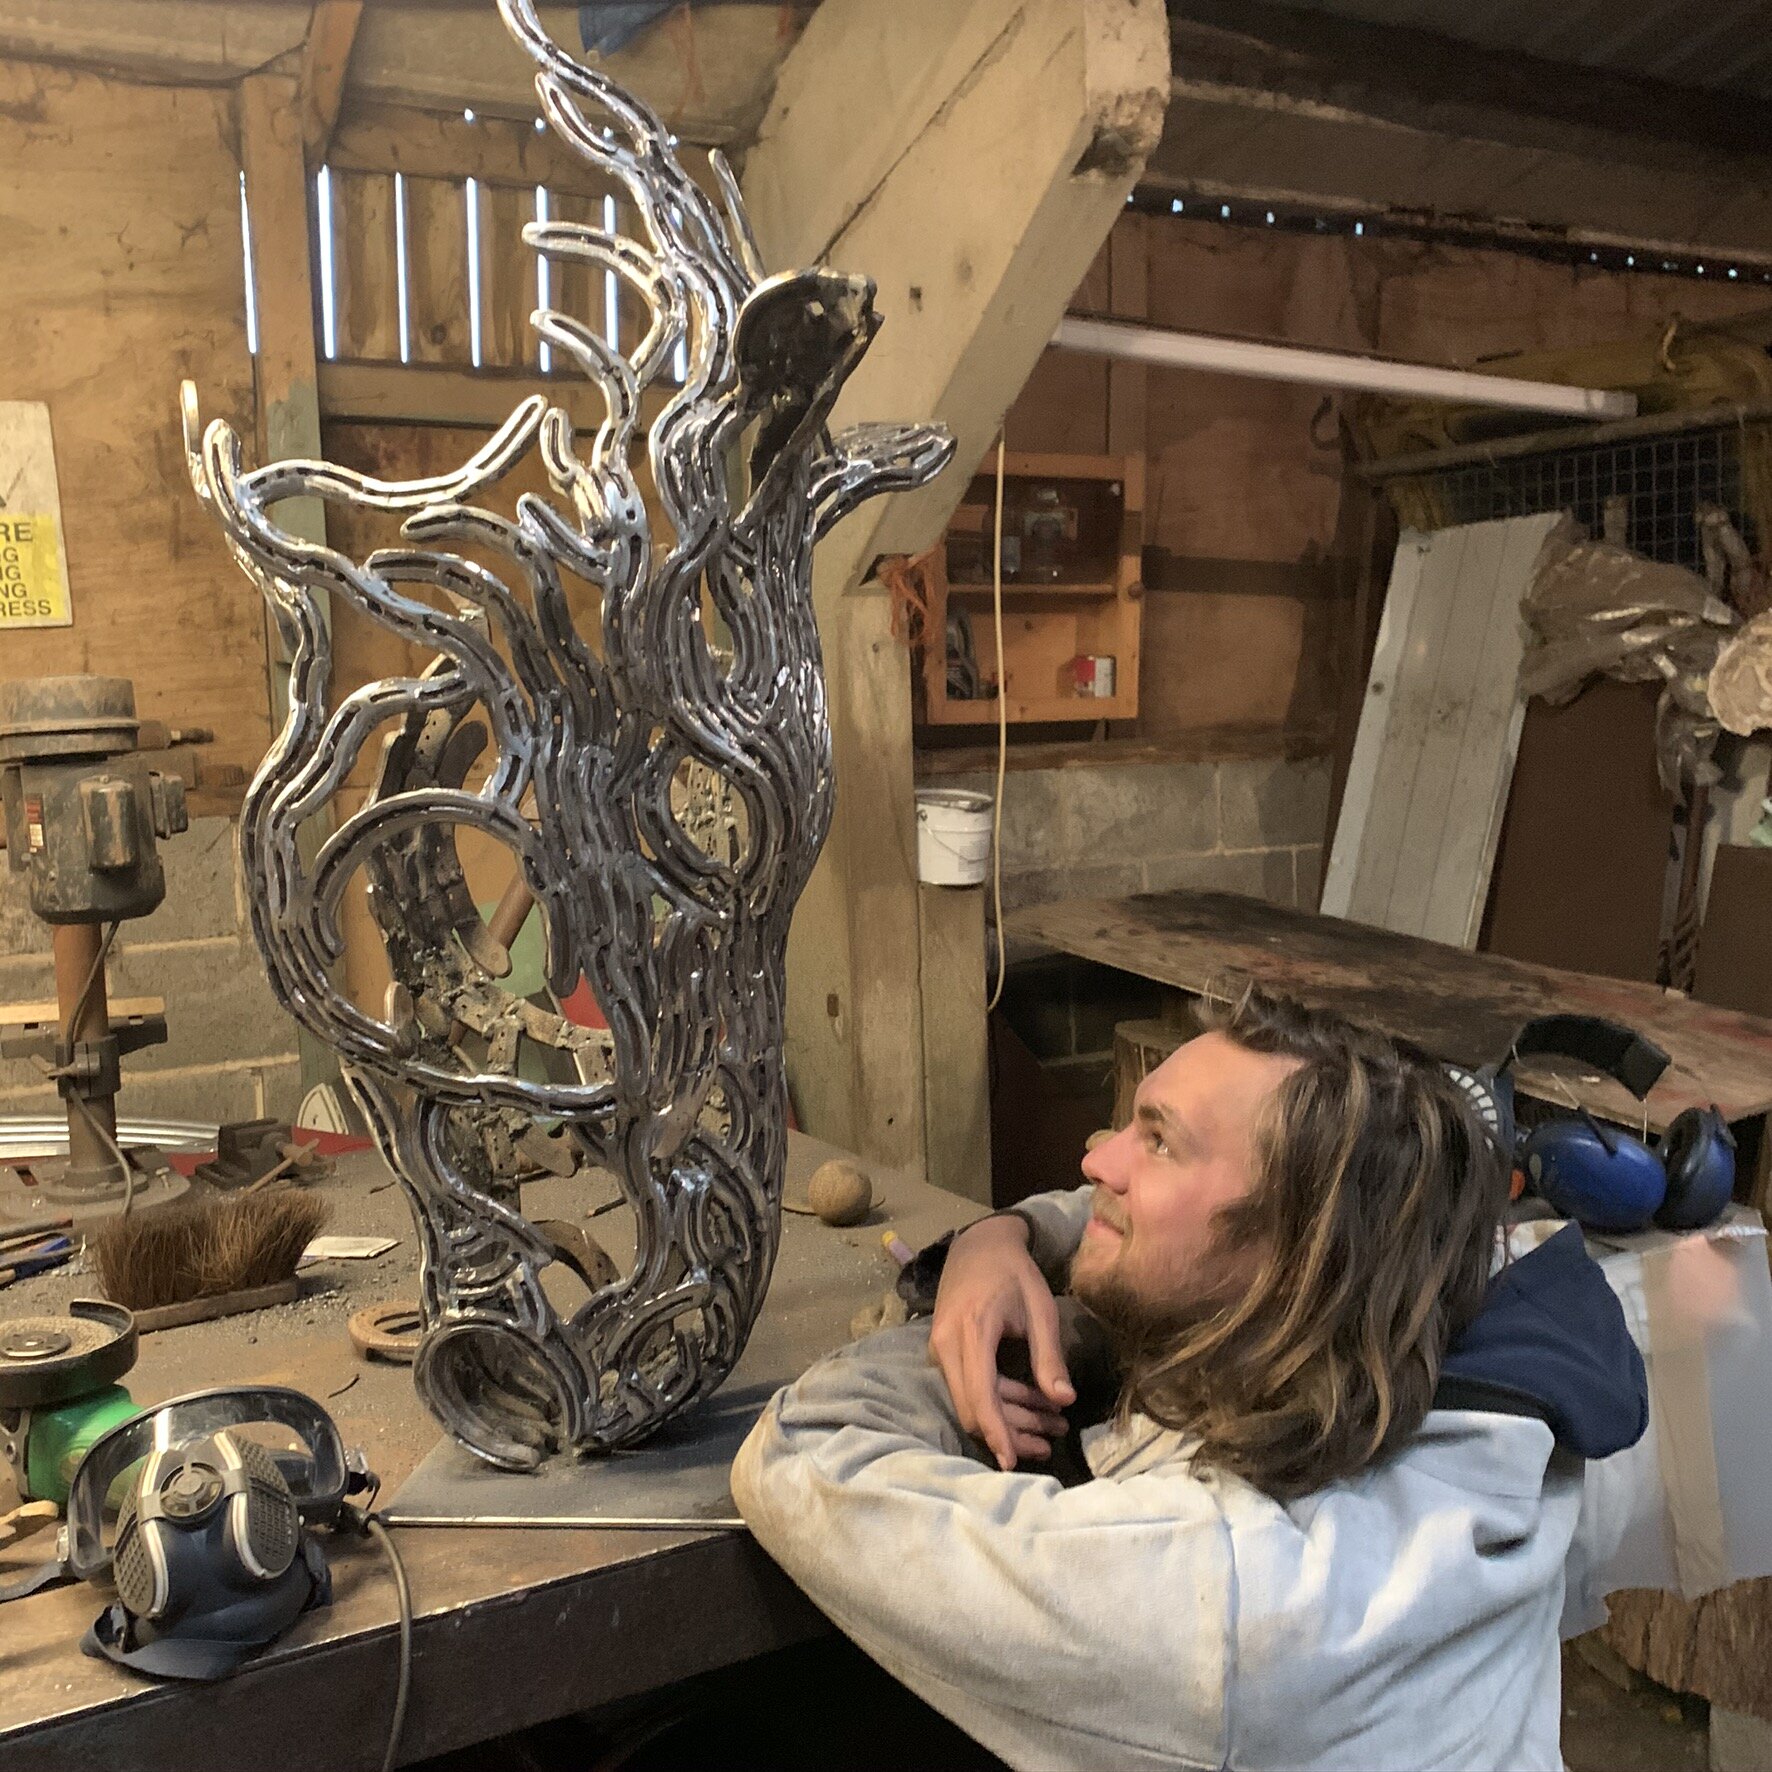 Metal Horse sculpture and Sculptor admiring it.